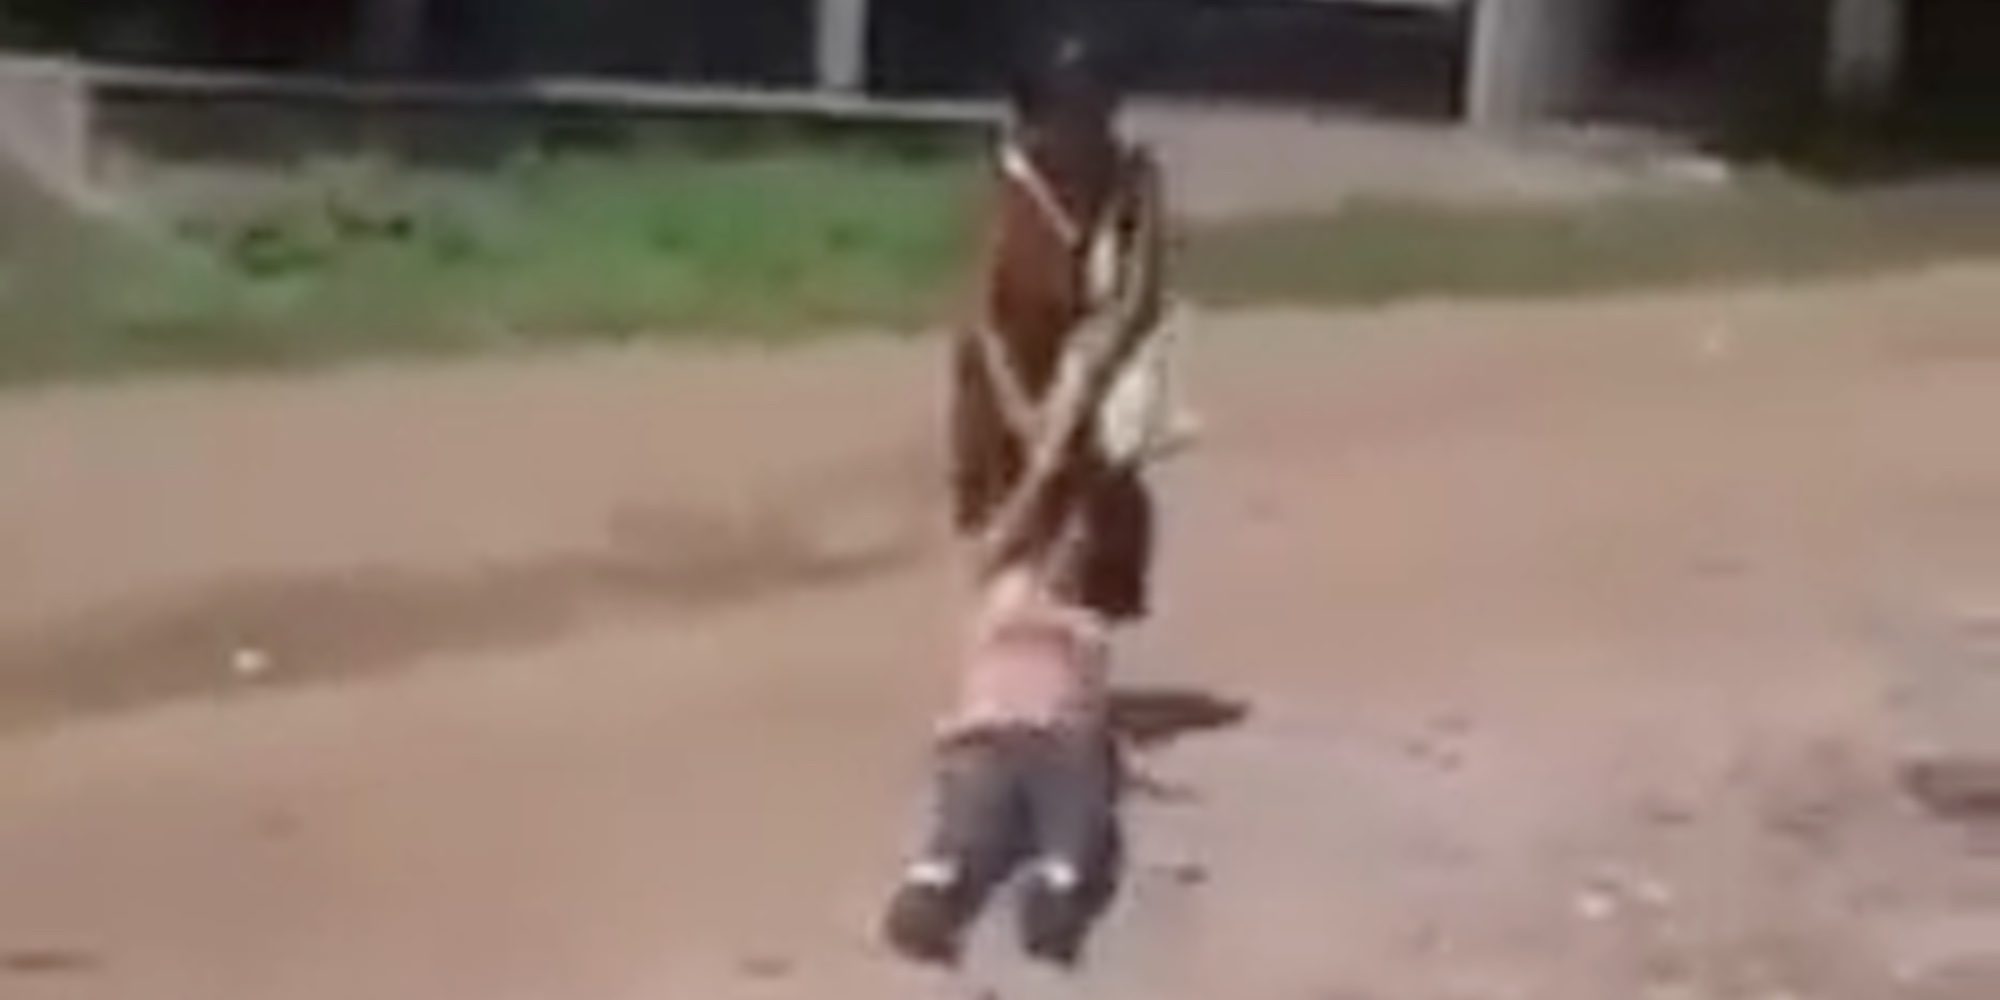 Una mujer arrastra de los pelos a su hija discapacitada por la calle en México